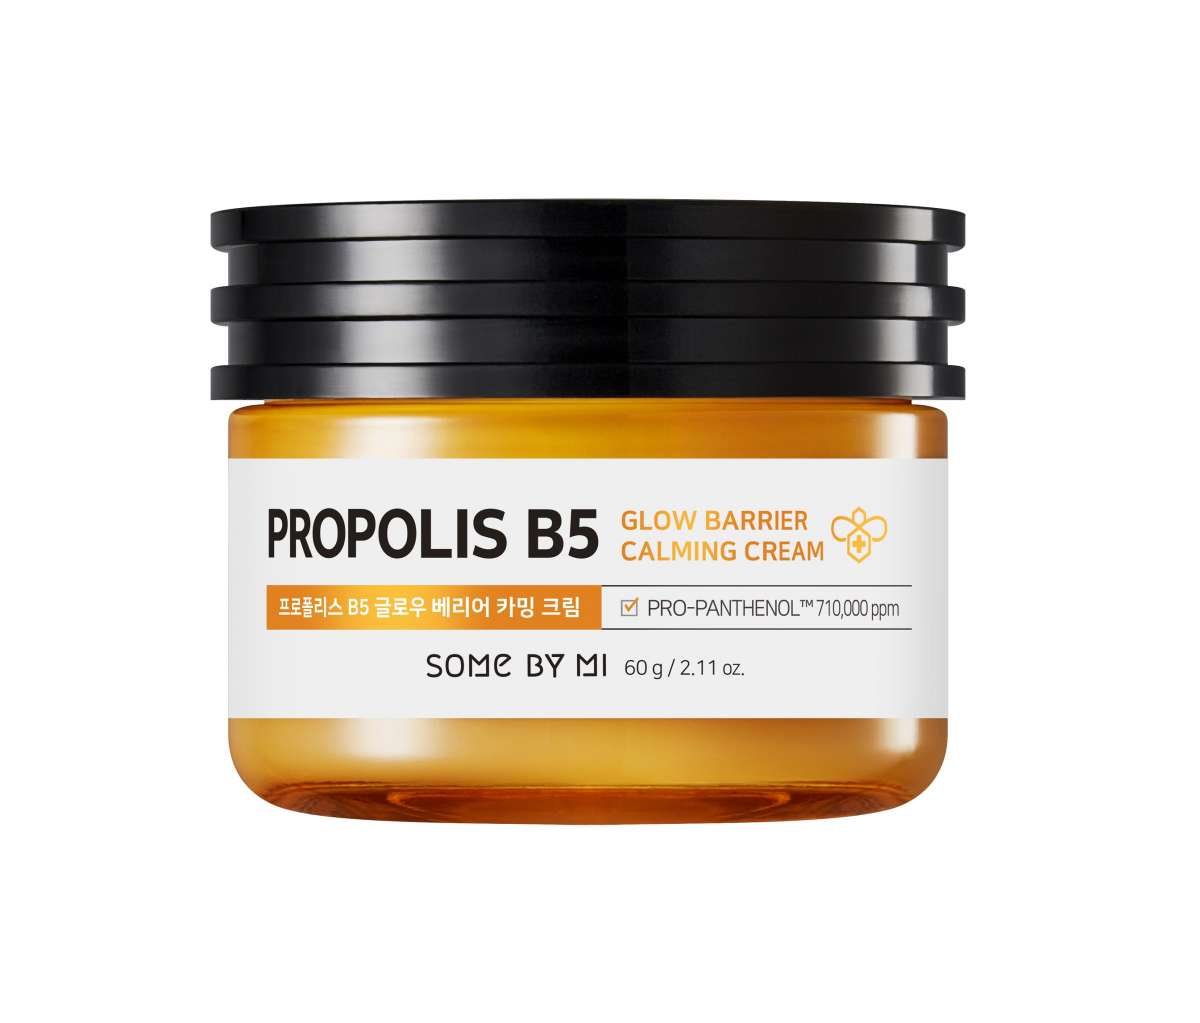 Somebymi-Propolis-B5-Cream-kbeauty-creme-apaisante-glow-seoulmate